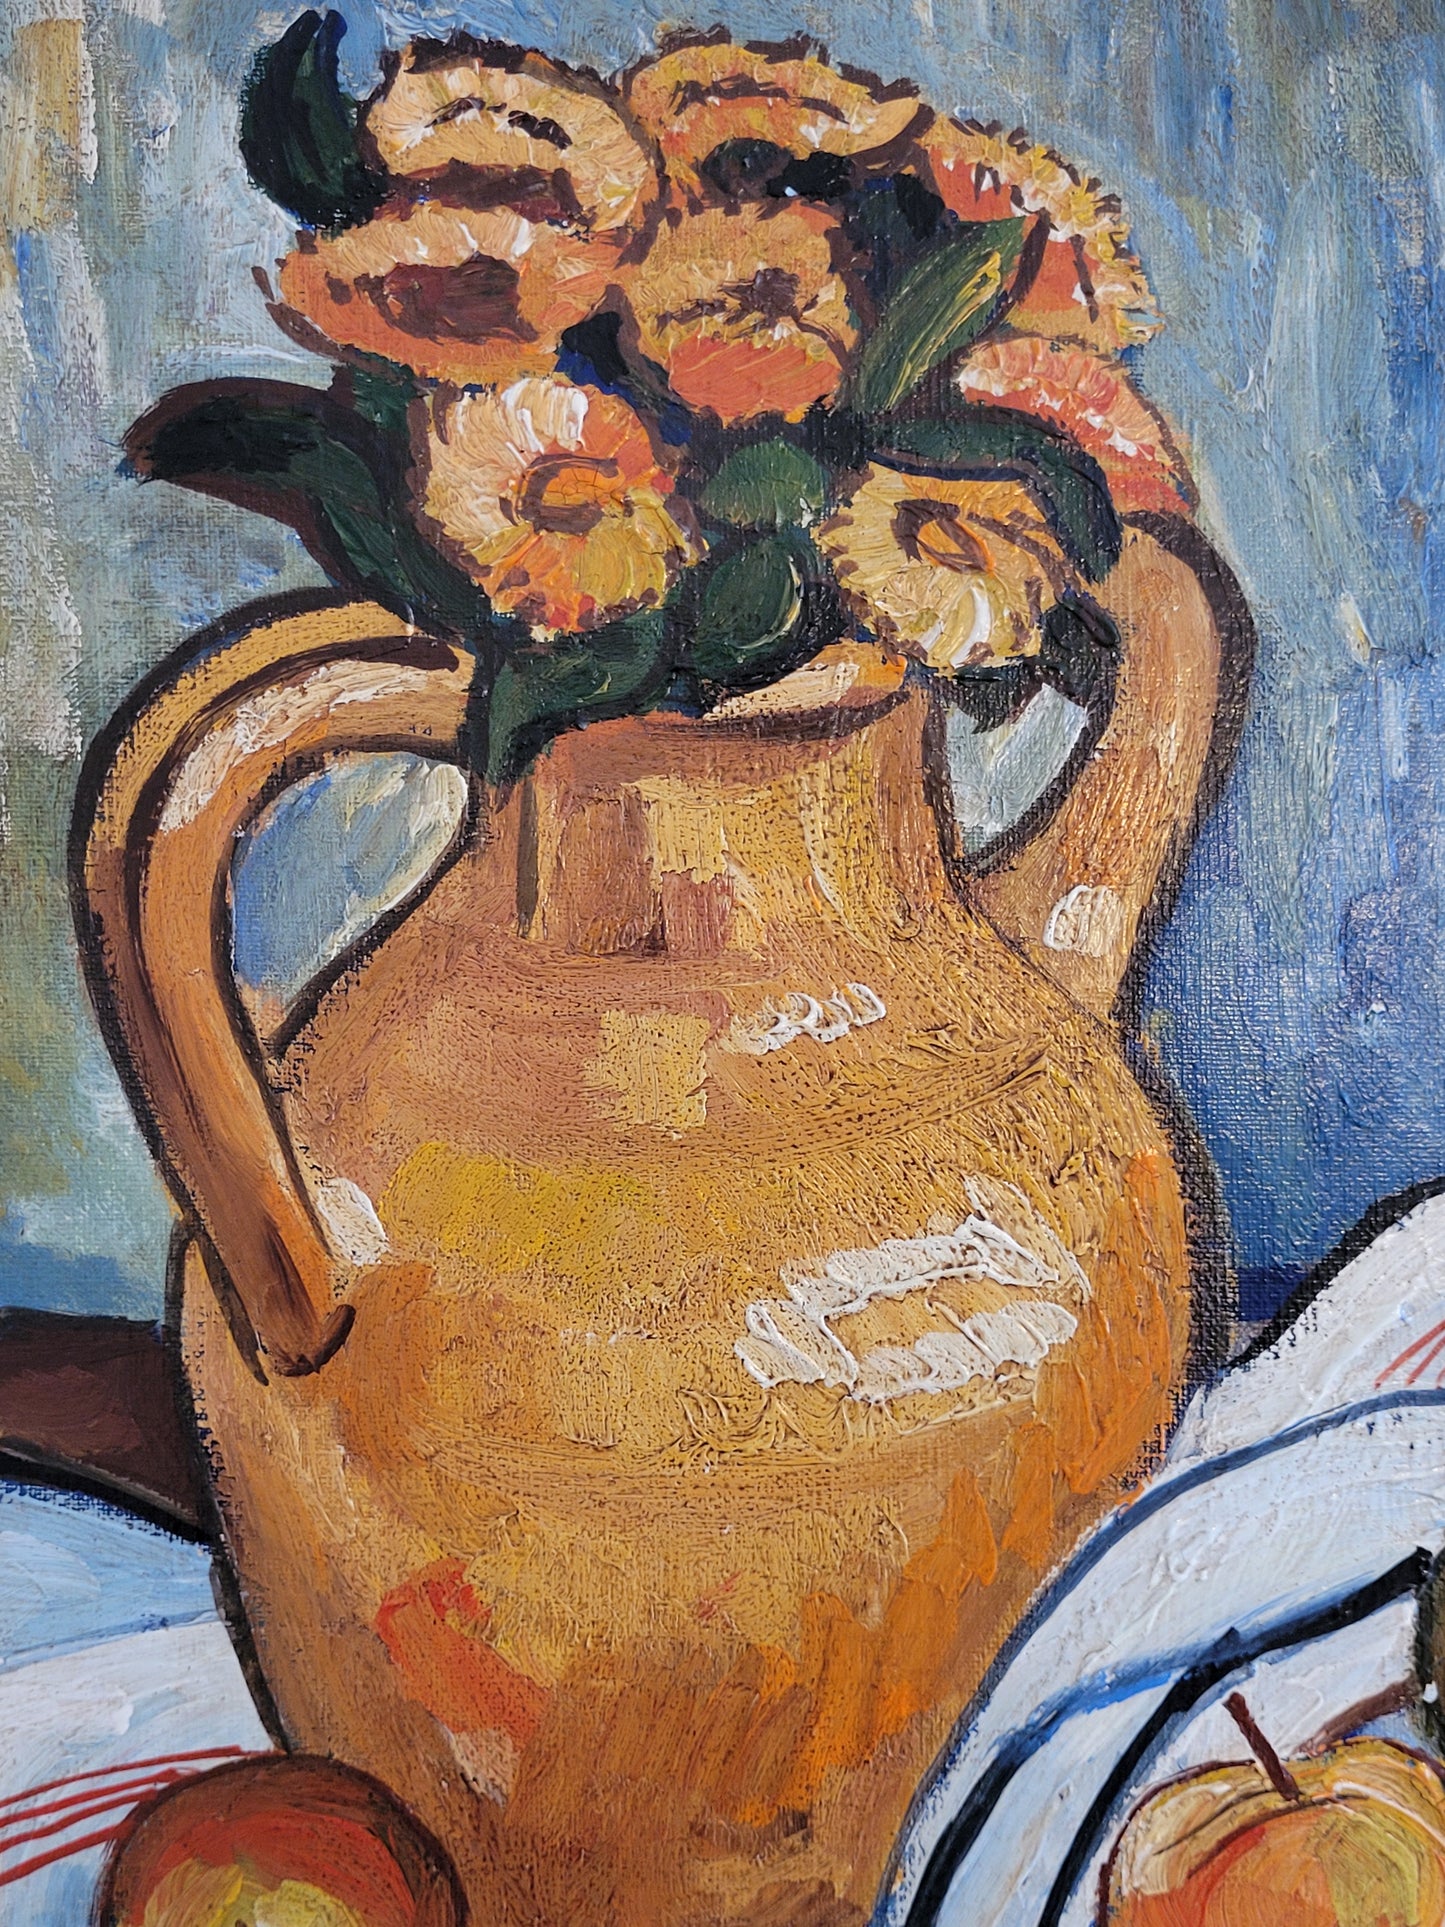 Viebrock (XX) Ölgemälde Moderne Malerei Stillleben Früchte mit Vase